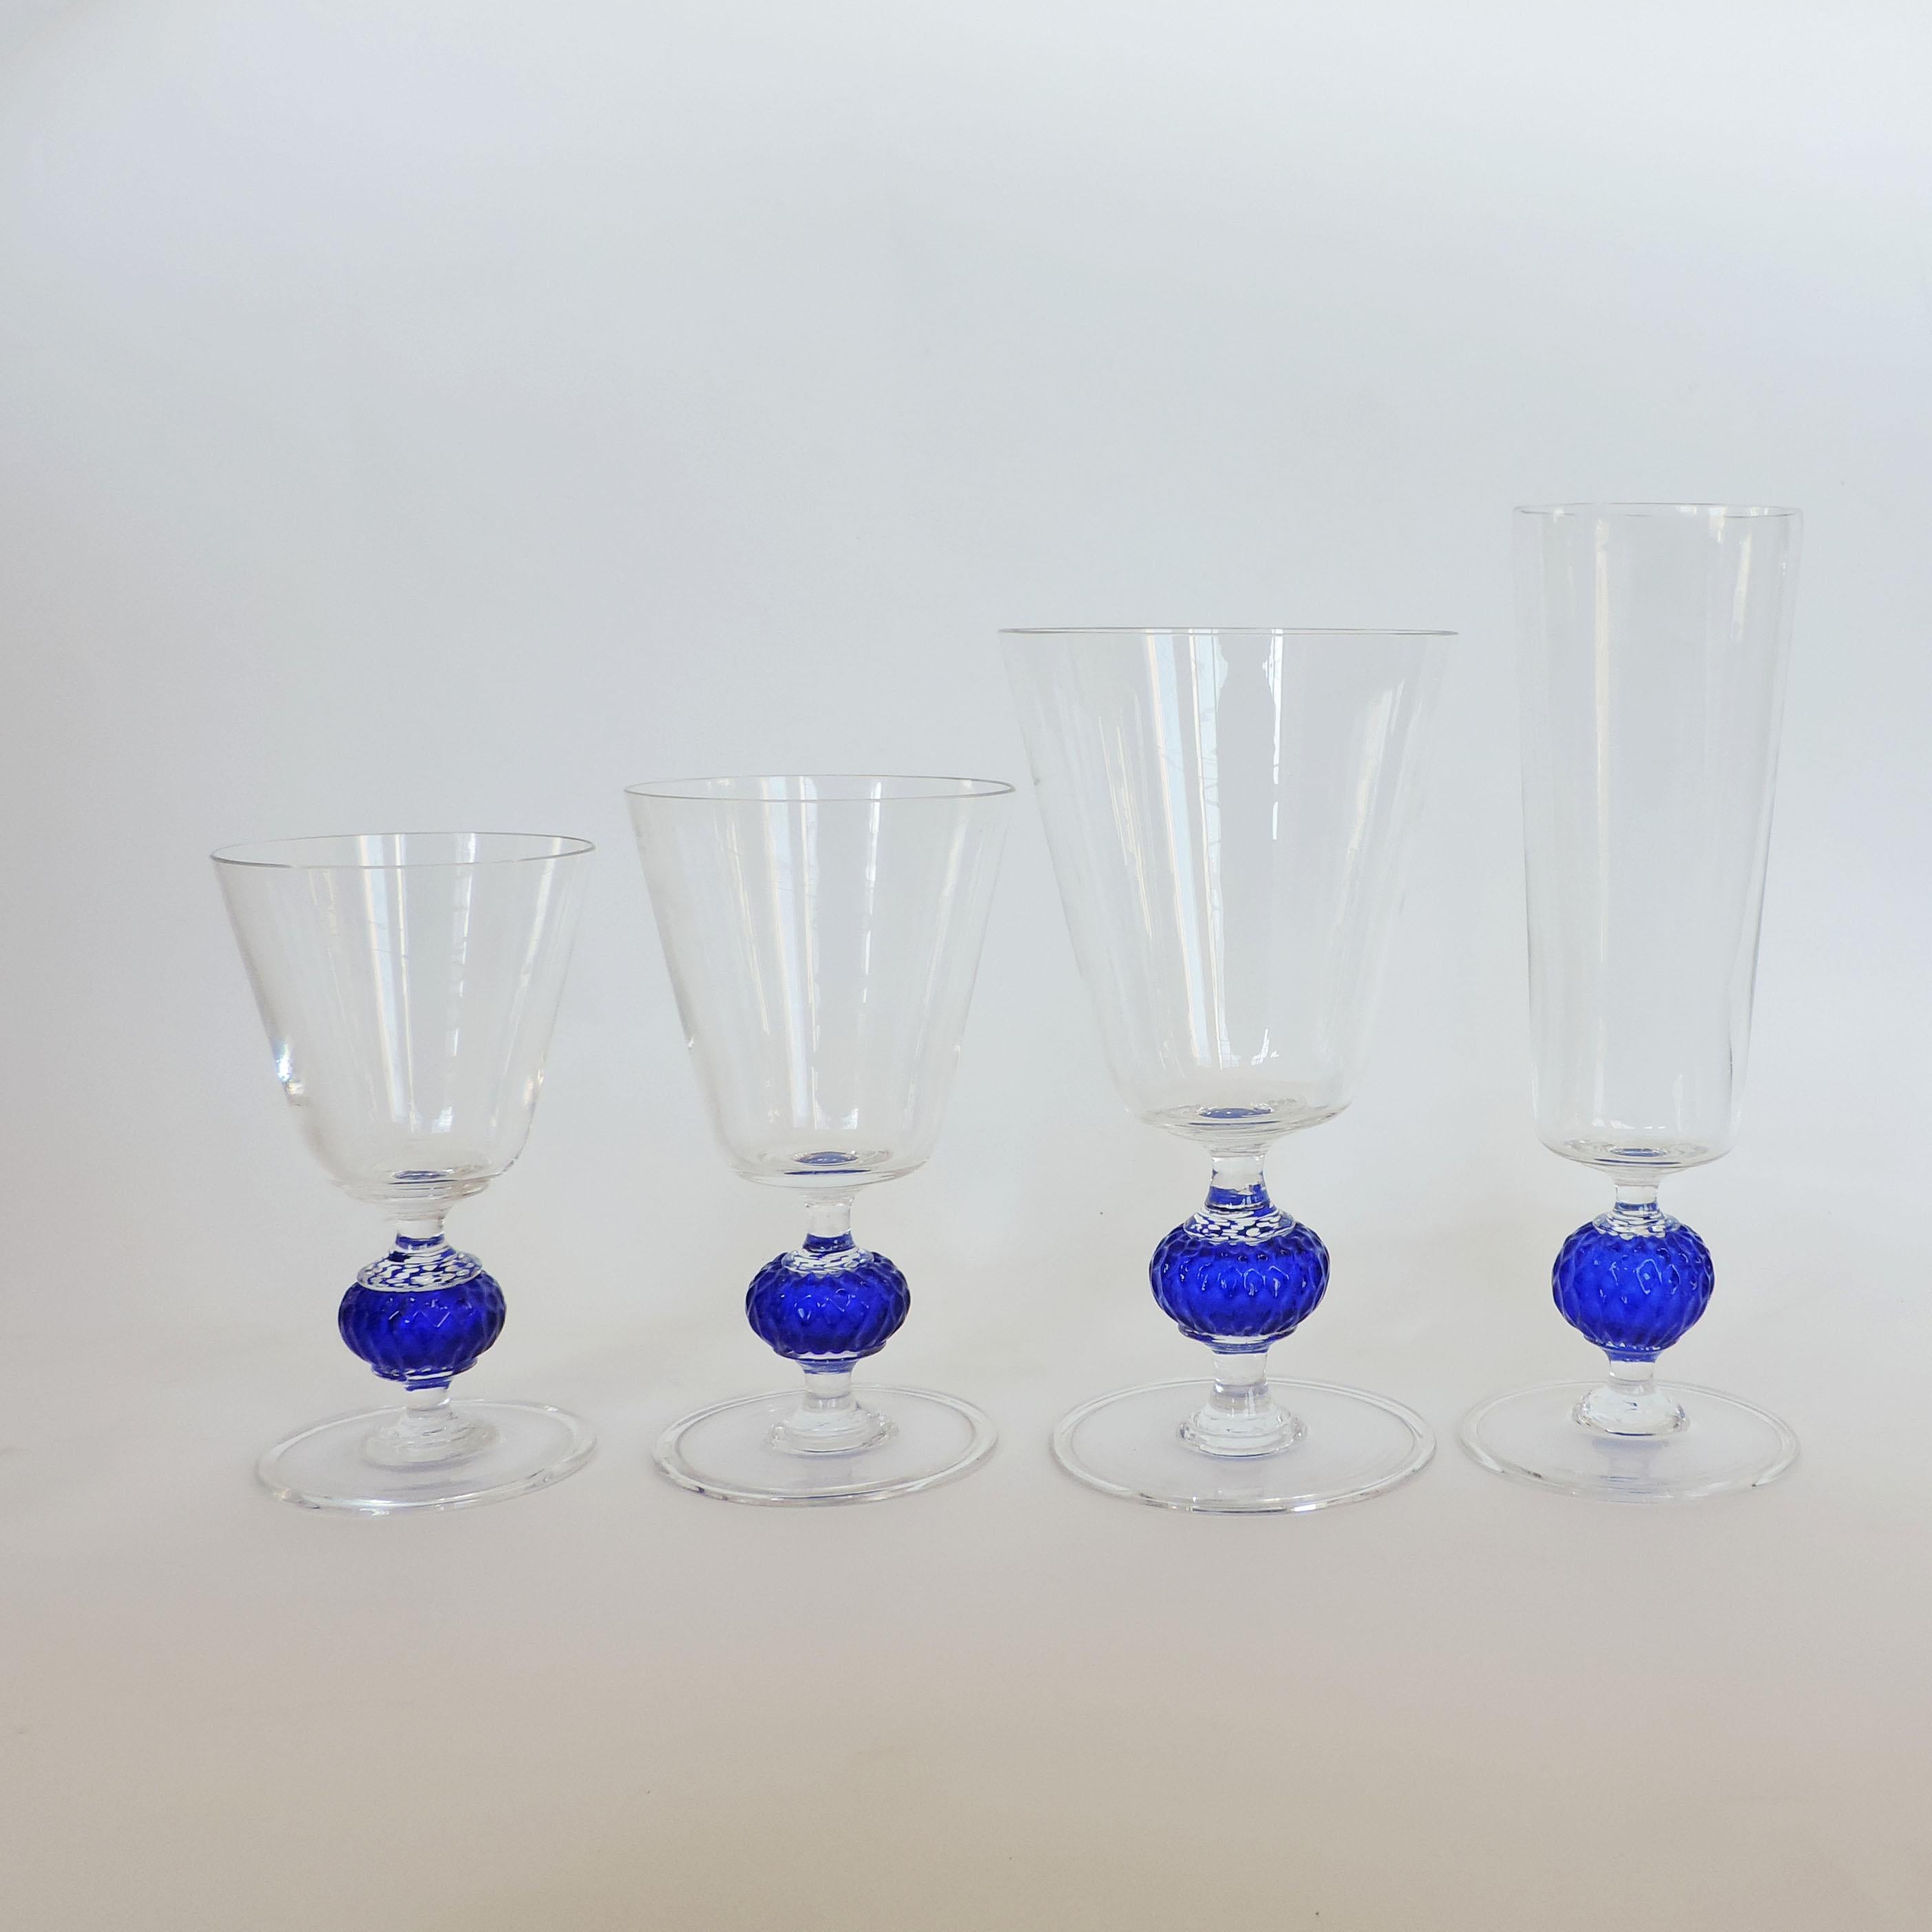 Ensemble de 40 verres à boire en verre de Murano soufflé à la bouche, datant des années 1950.
10 pièces par forme
Verre transparent et bleu.

